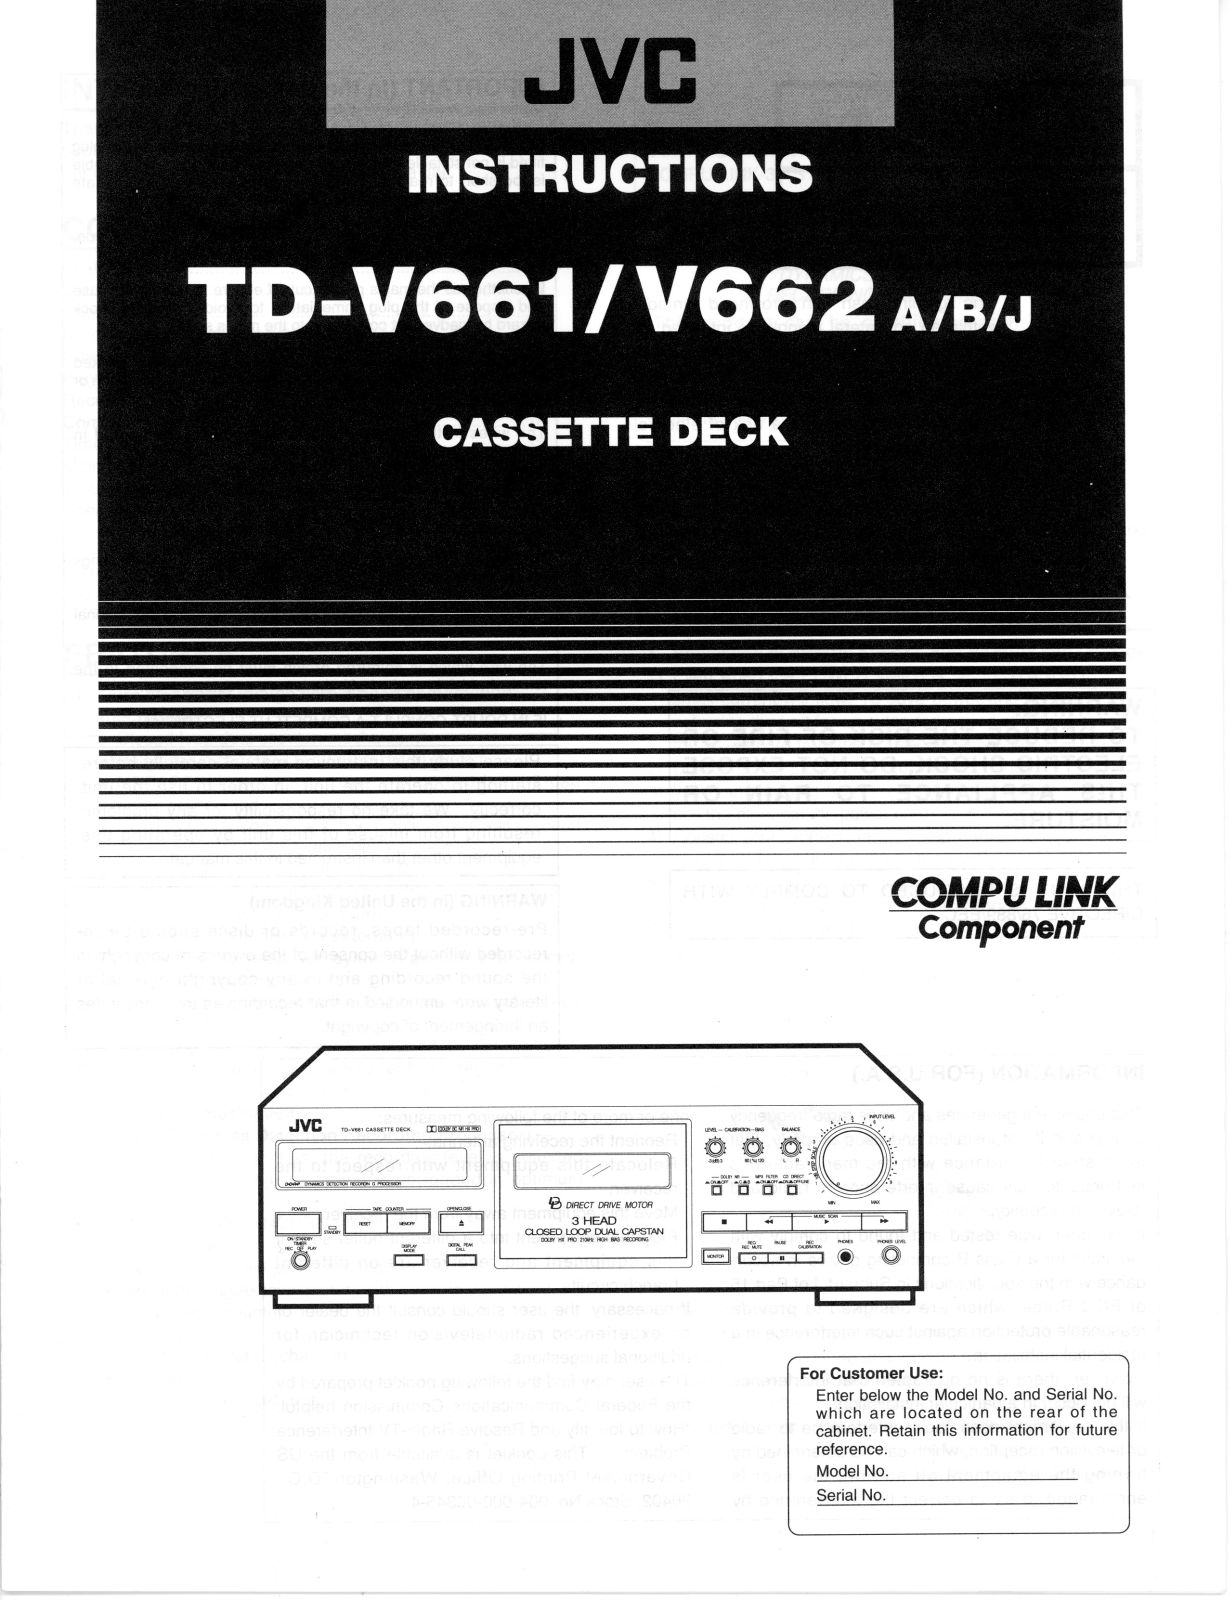 JVC TD-V661, TD-V662 User Manual